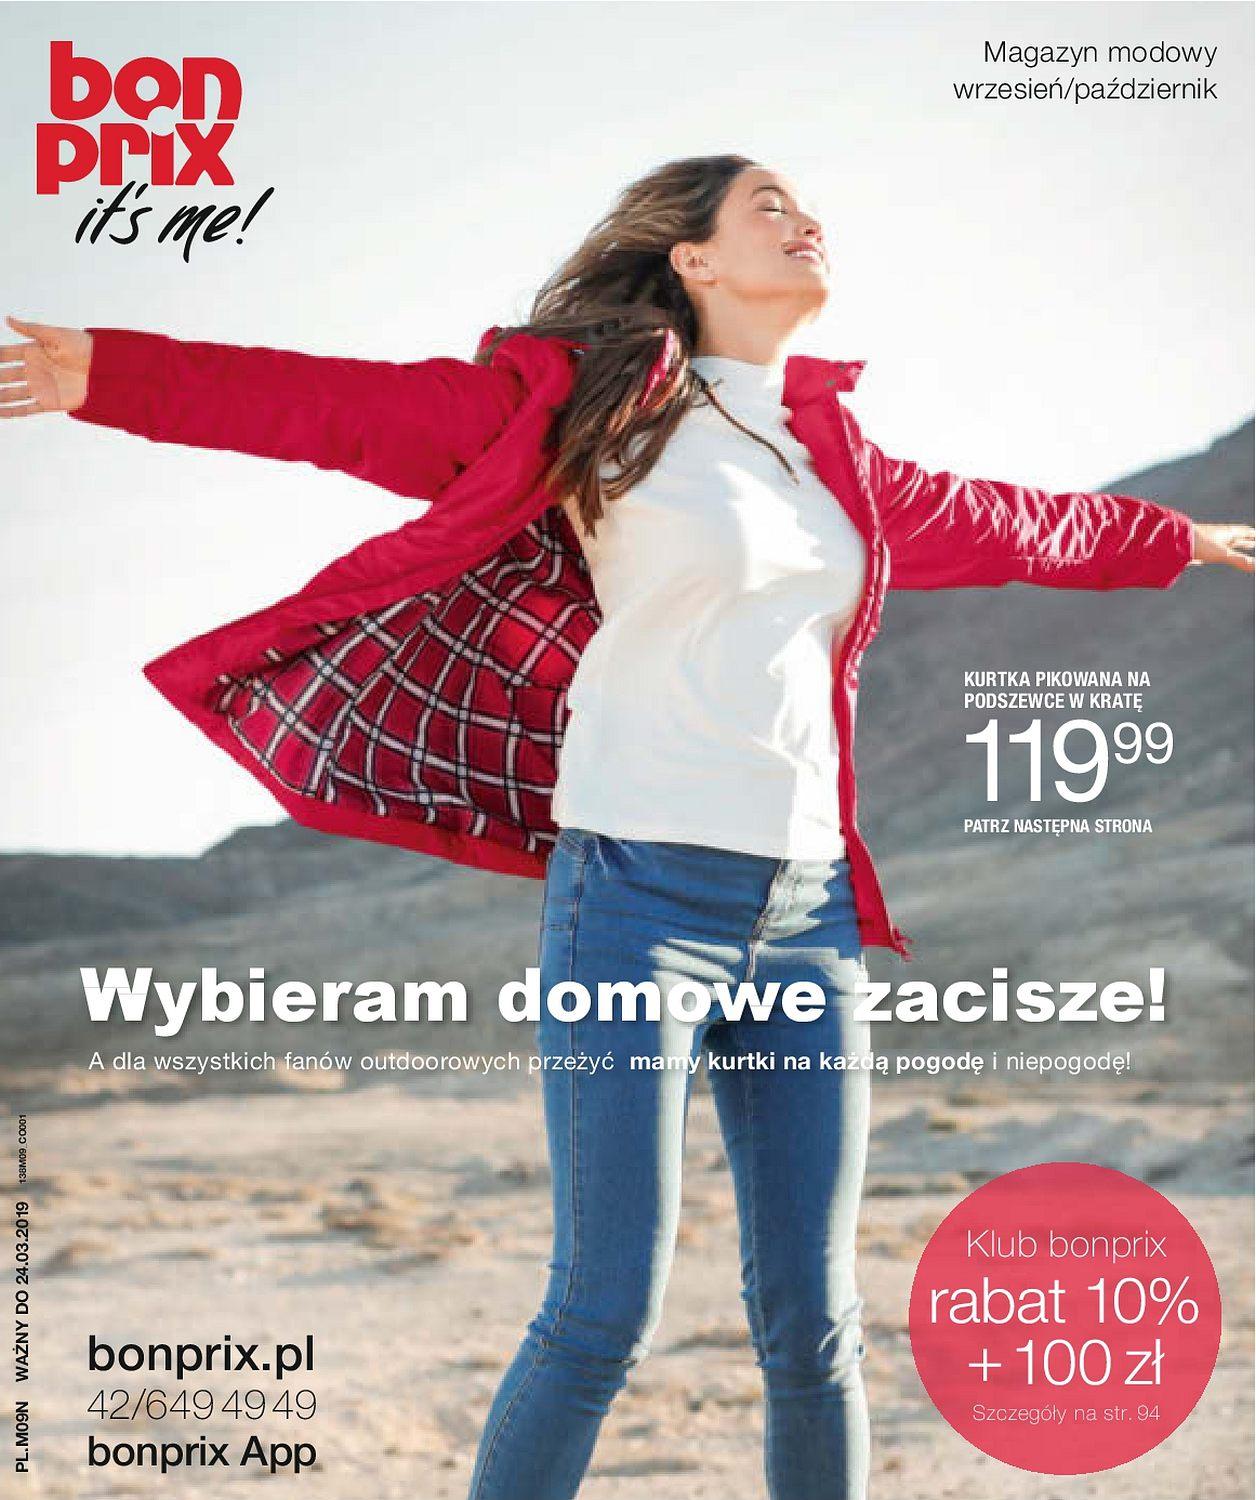 Gazetka promocyjna bonprix do 24/03/2019 str.1